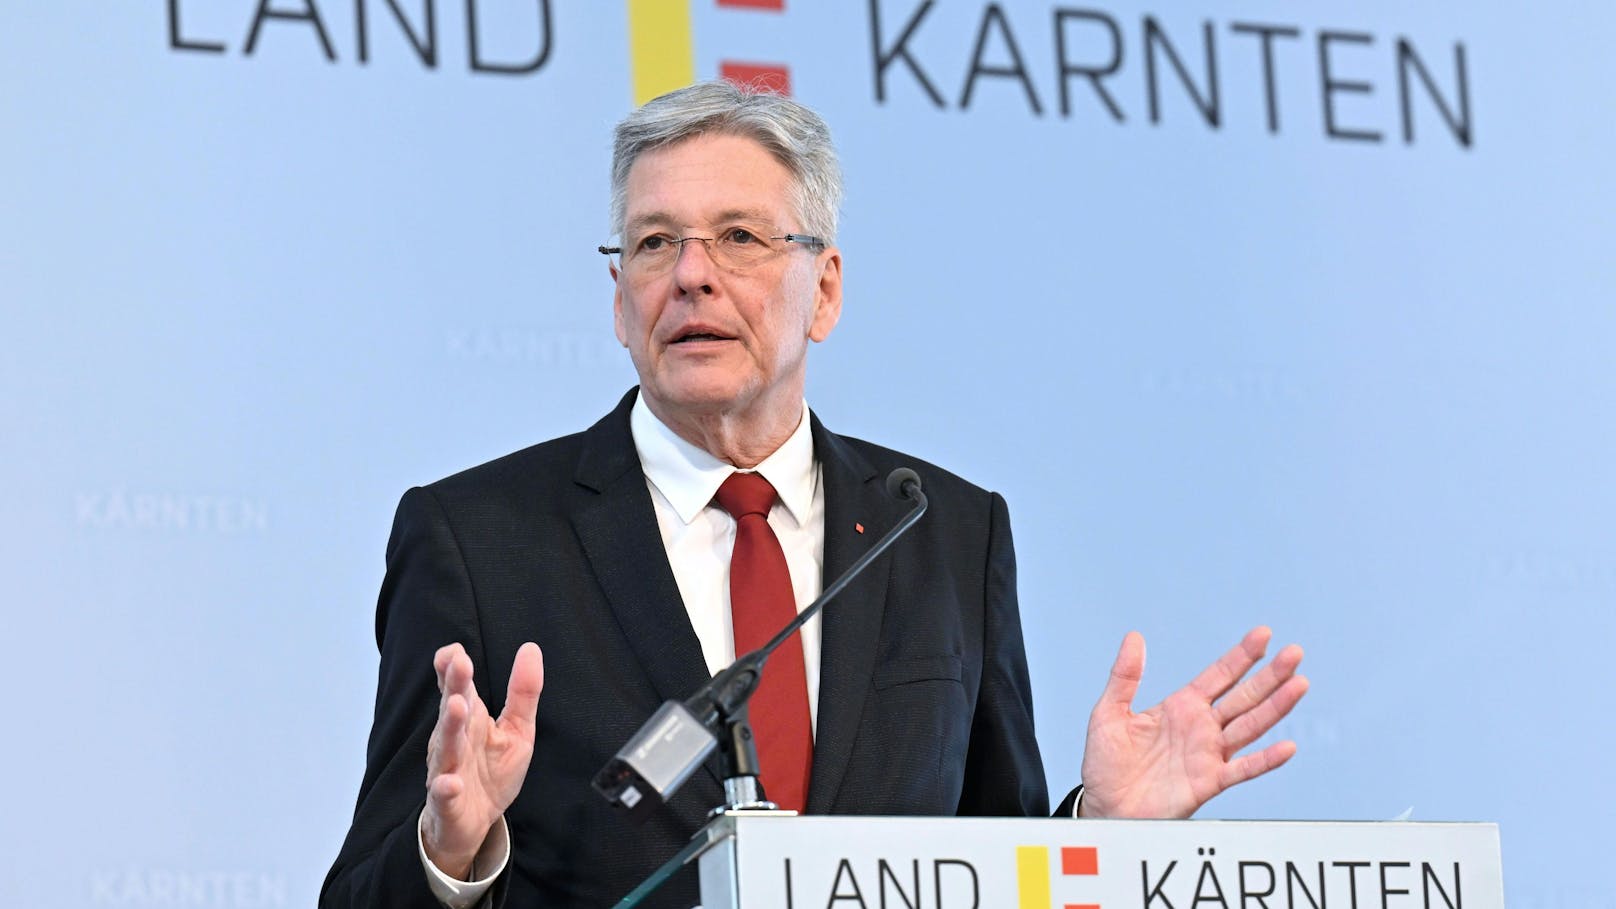 Kärntens SPÖ-Landeschef <strong>Peter Kaiser</strong>: "Wir setzen in Kärnten um, was wir als SPÖ auch im Nationalrat fordern."